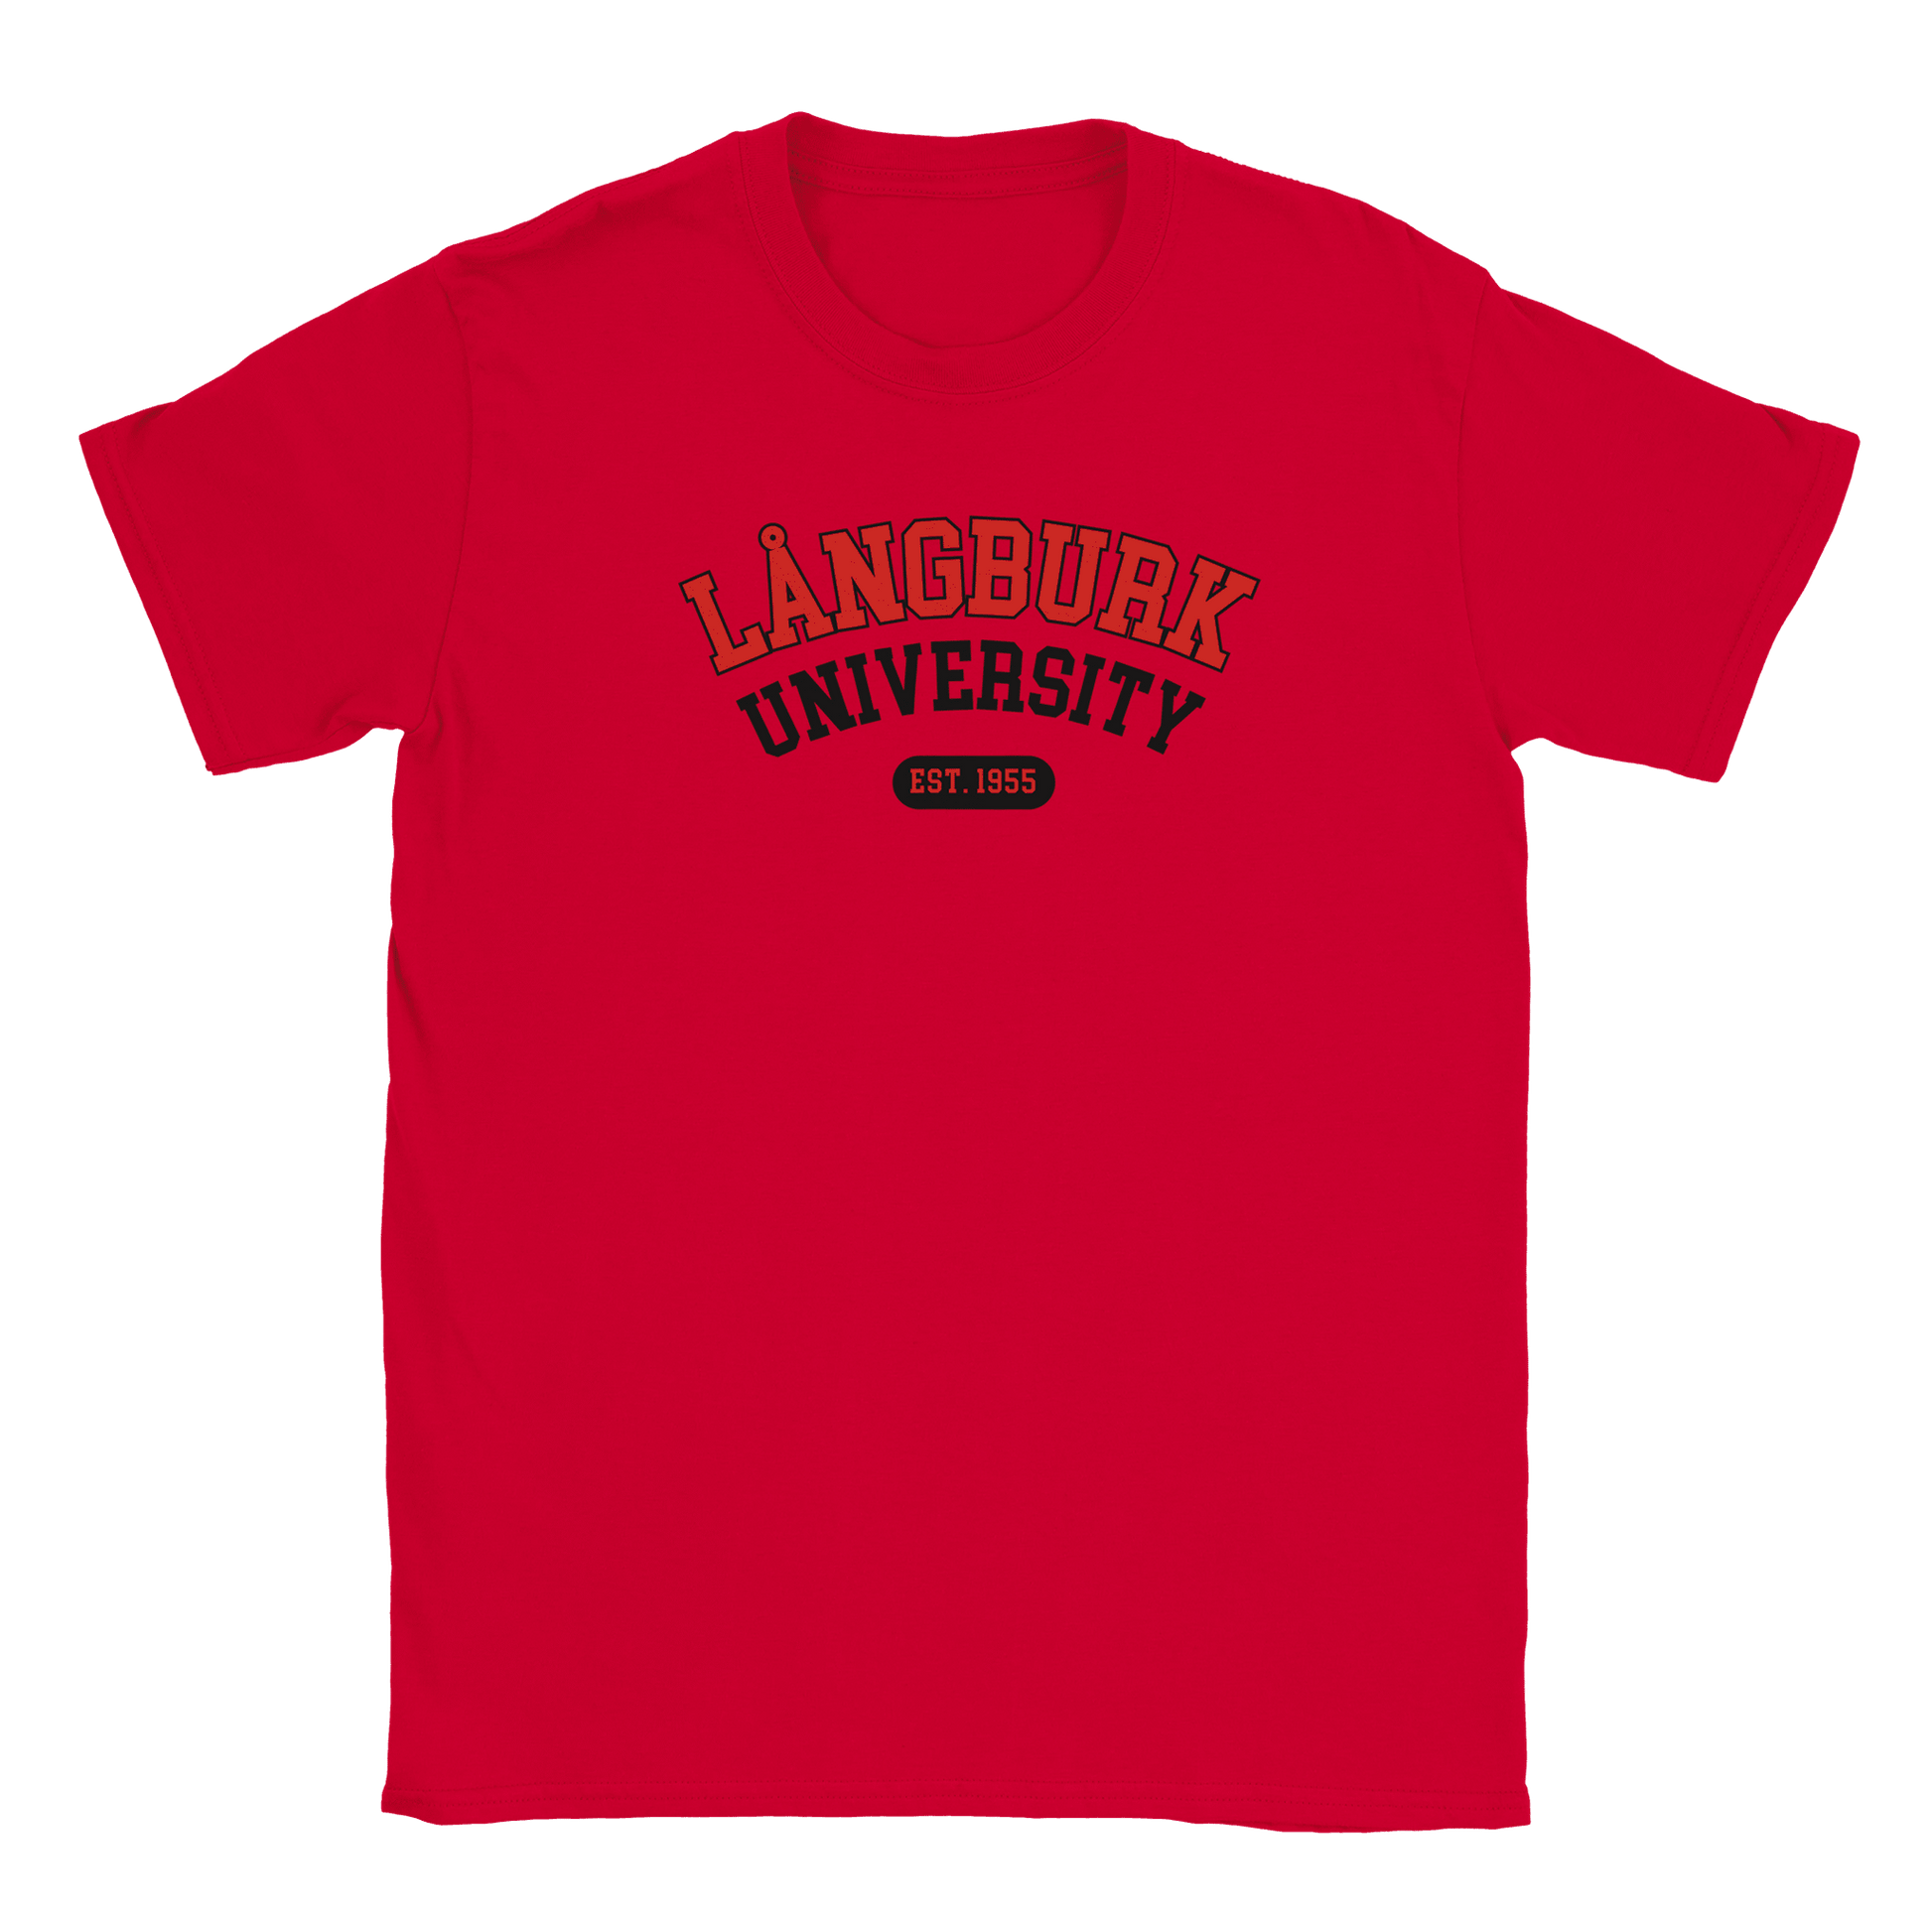 Långburk University Est. 1955 - T-shirt Röd